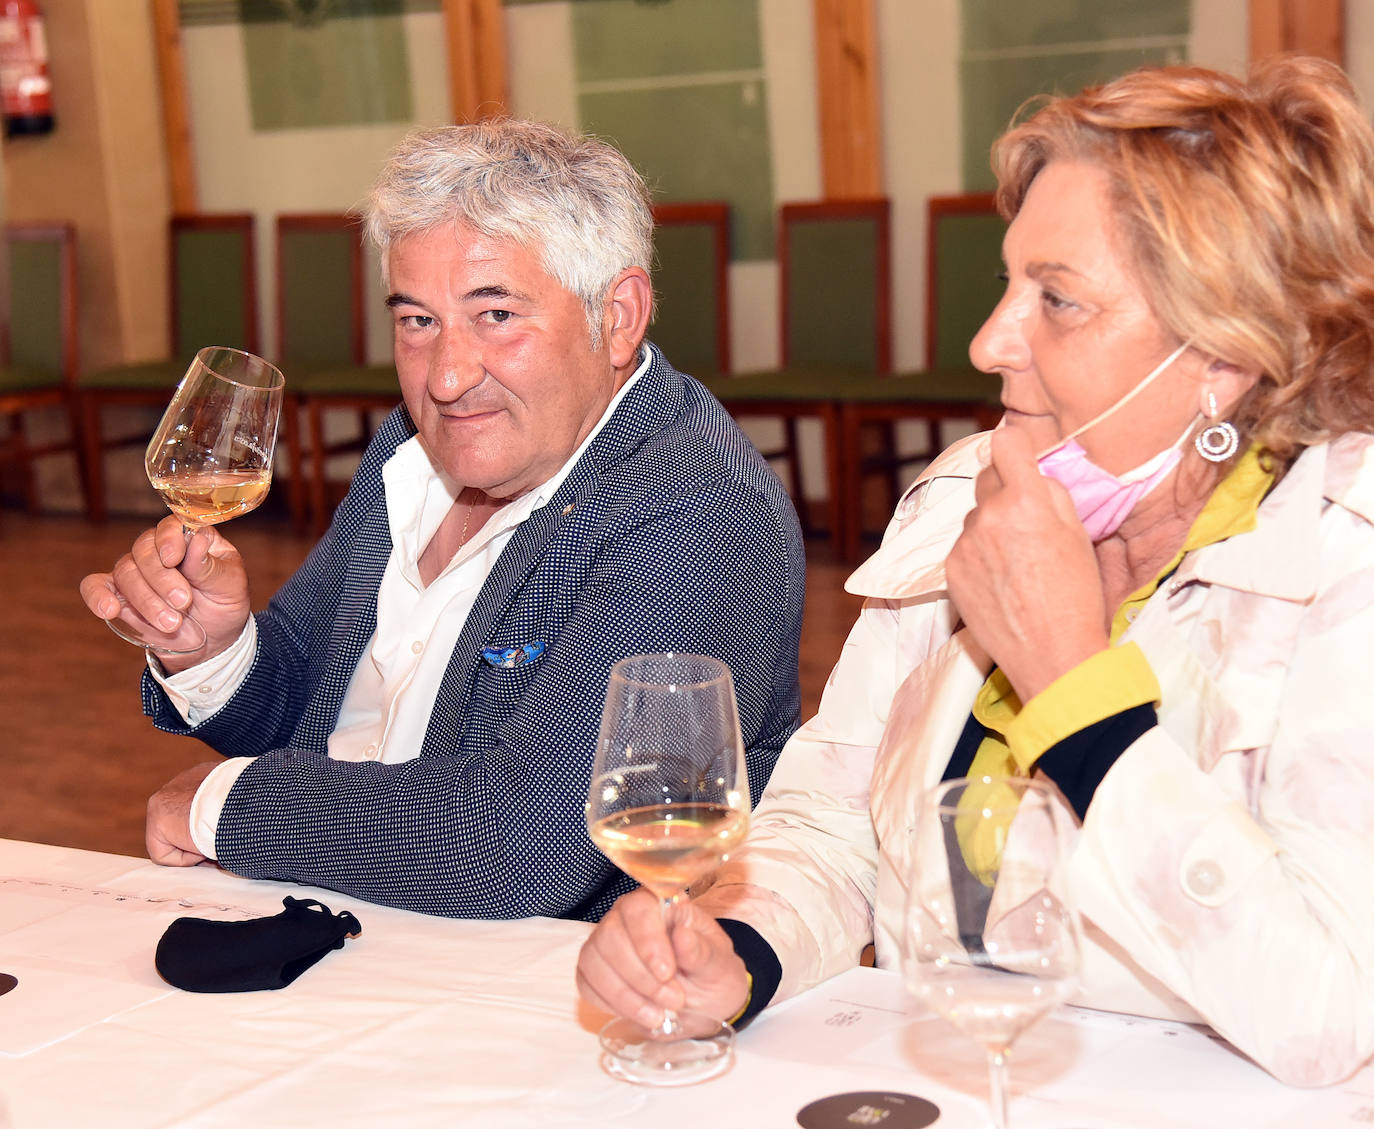 Tras la jornada de juego, los asistentes disfrutaron de la cata de dos vinos de Bodegas Altanza.